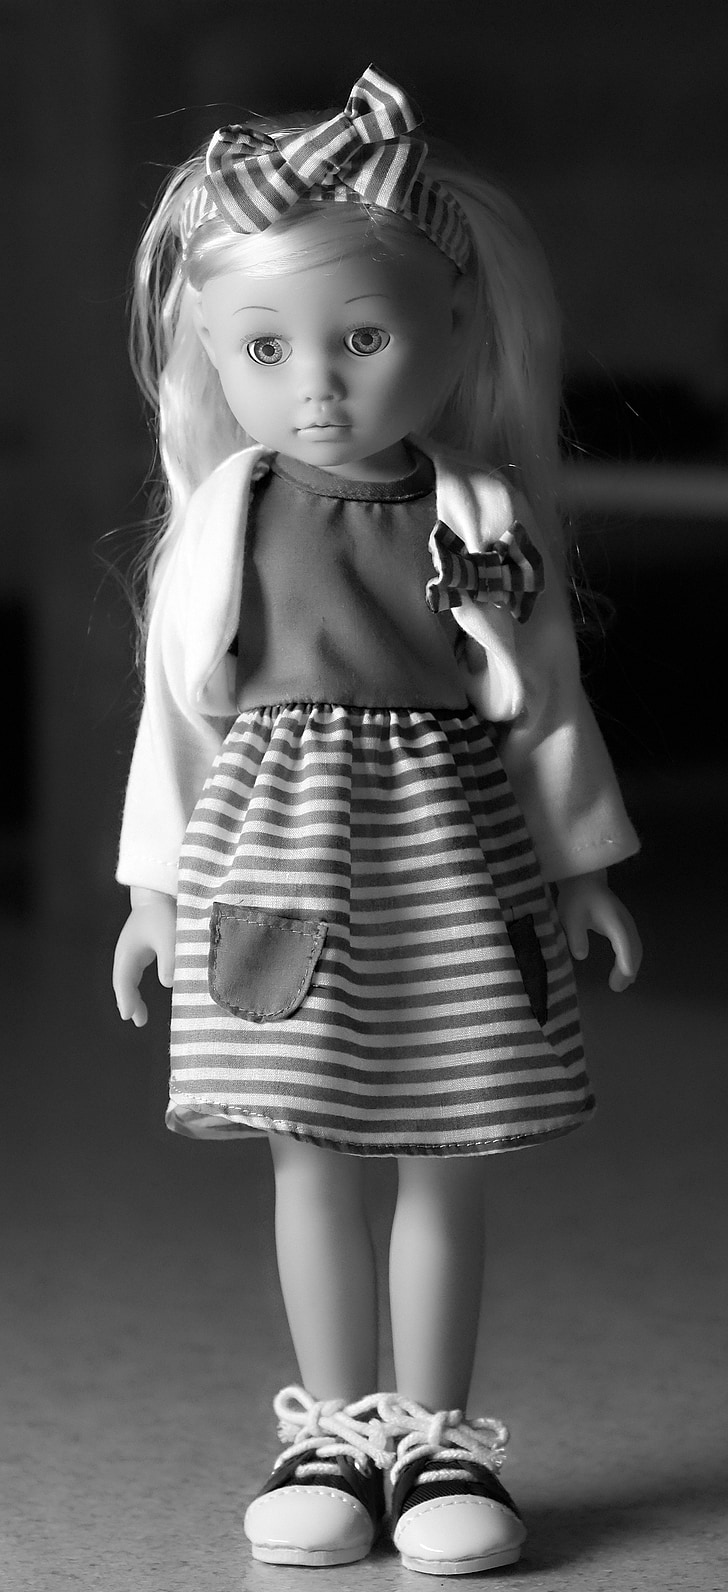 Puppe, schwarz weiß, Modepuppe, blond, modellpuppe, Abbildung, Streifen